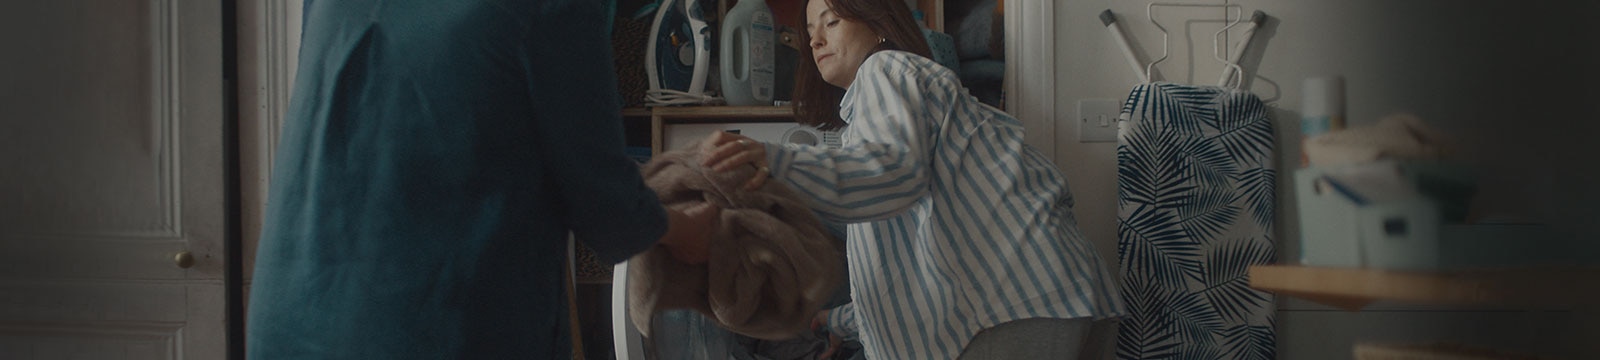 Žena vyndává prádlo z pračky a předává ho své mamince.